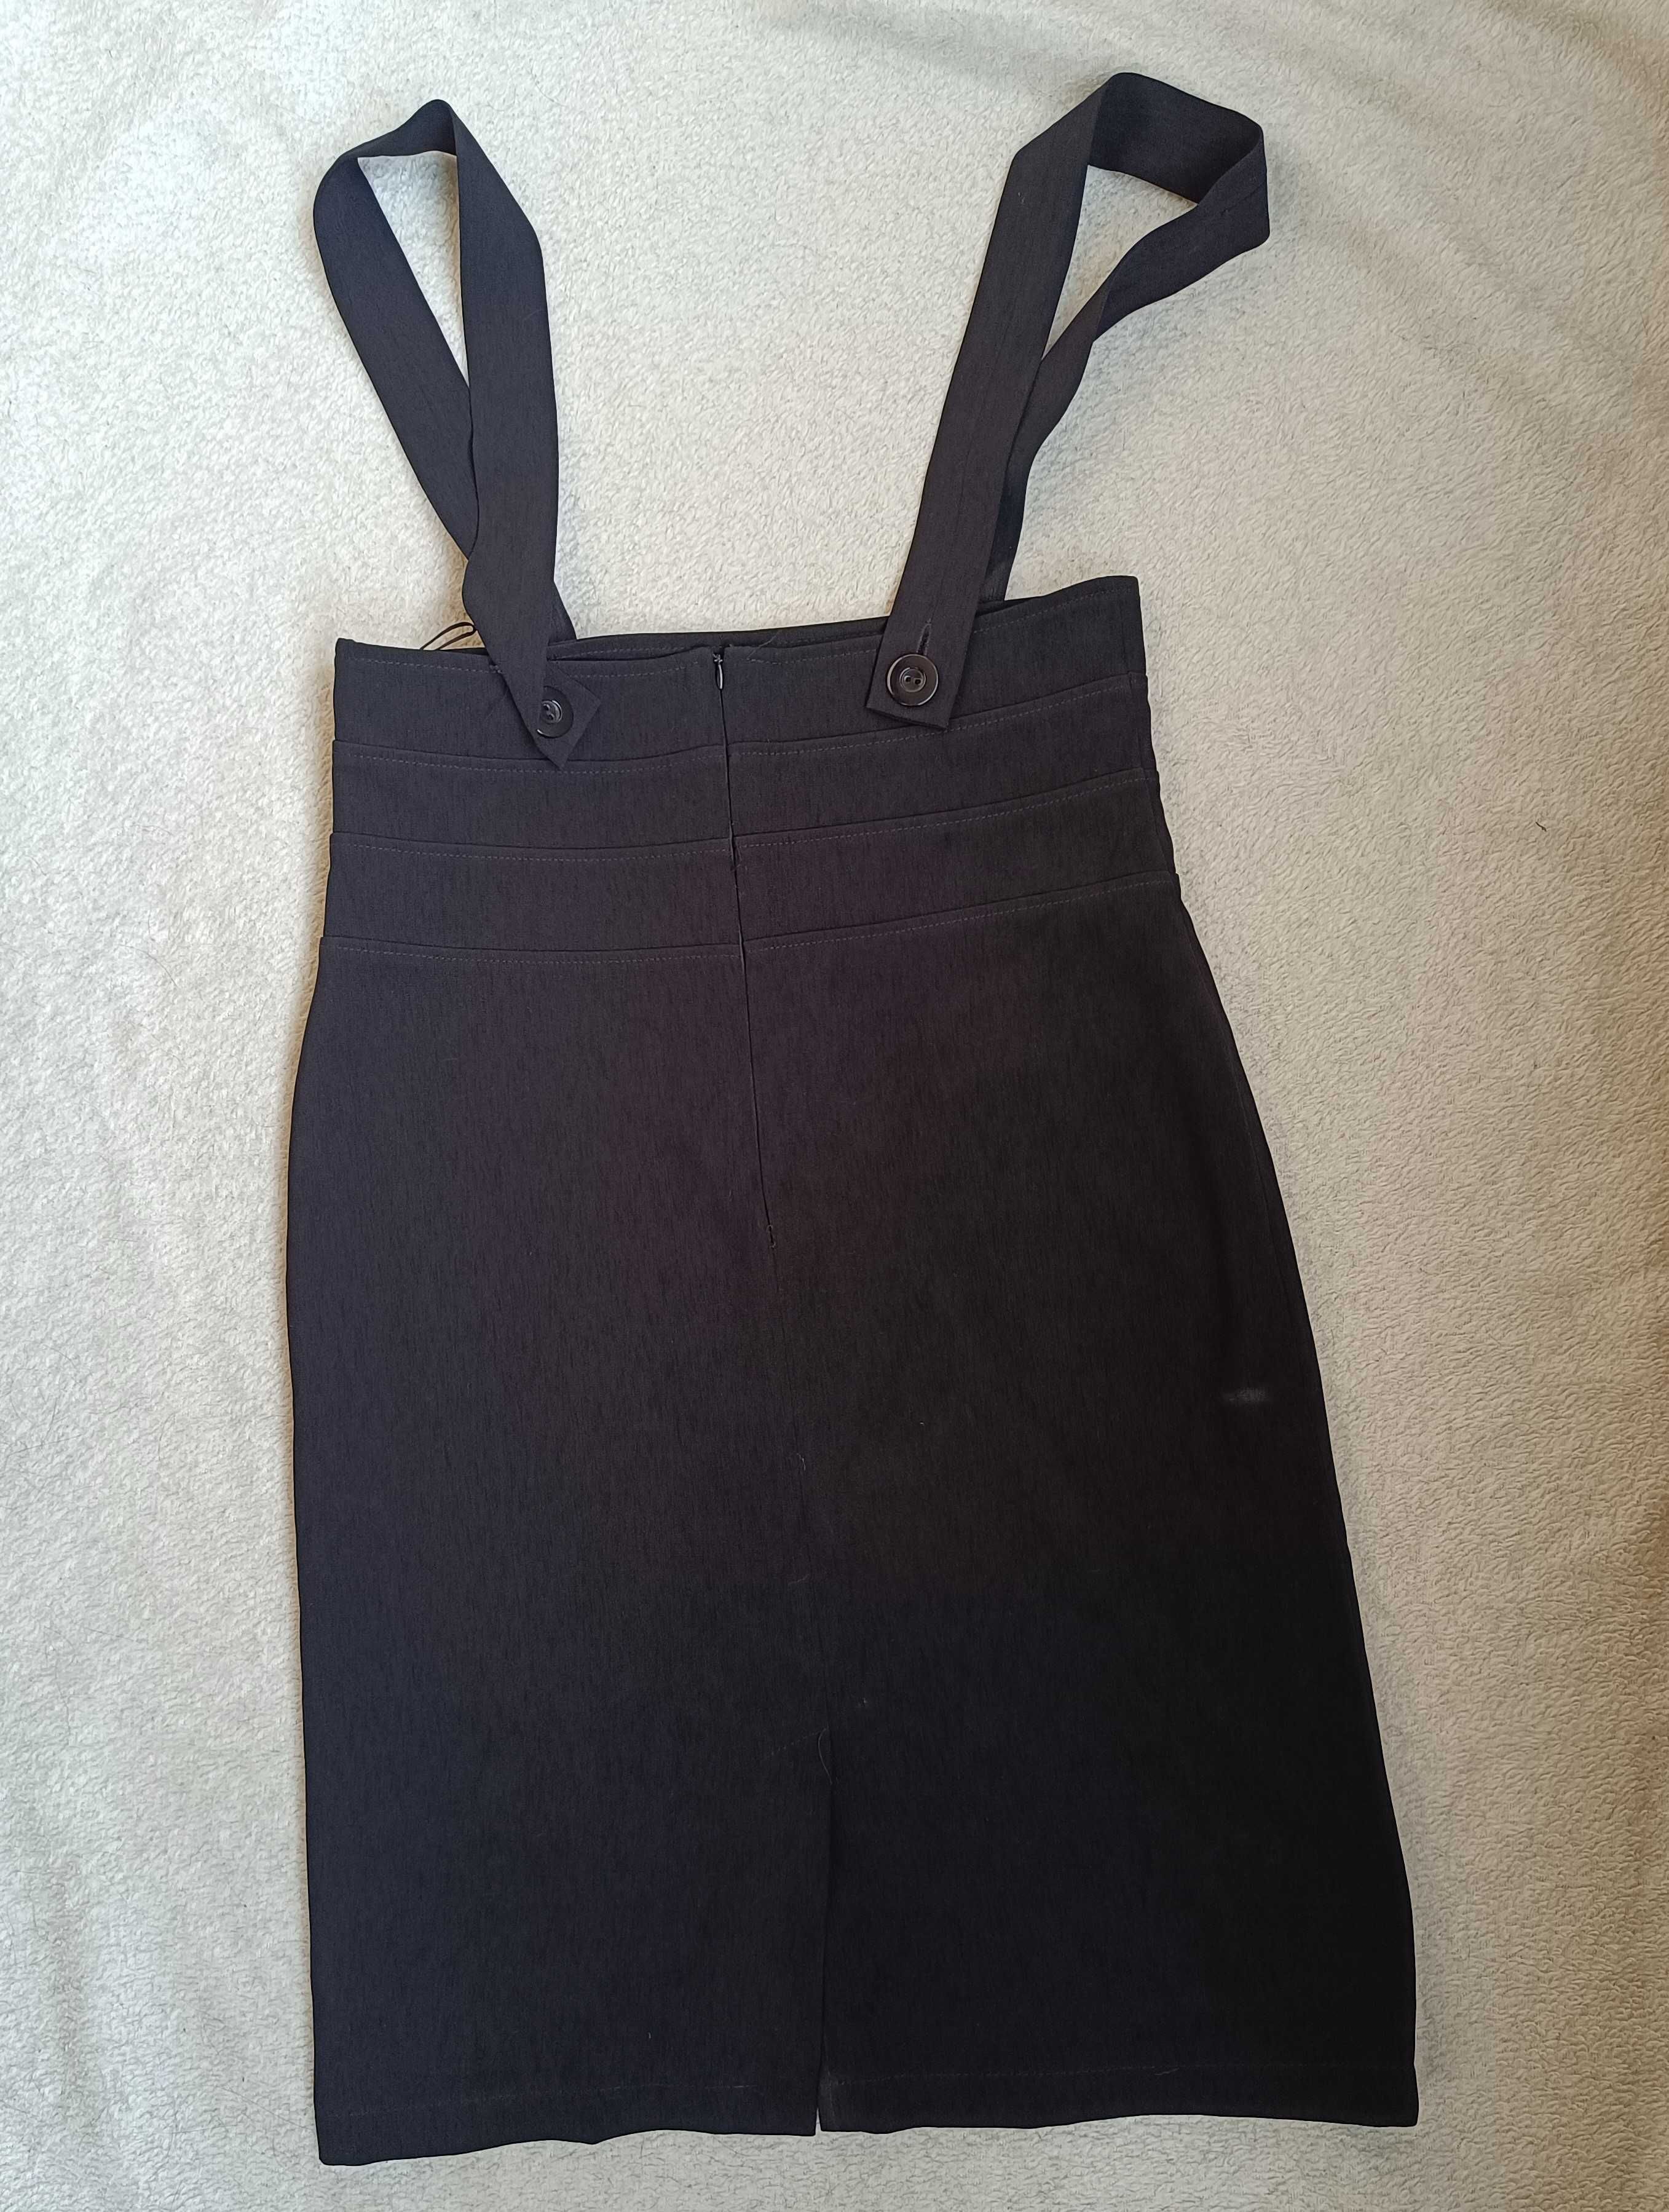 Elegancka spódniczka czarna z szelkami wizytowa, dobra jakość, roz. 44